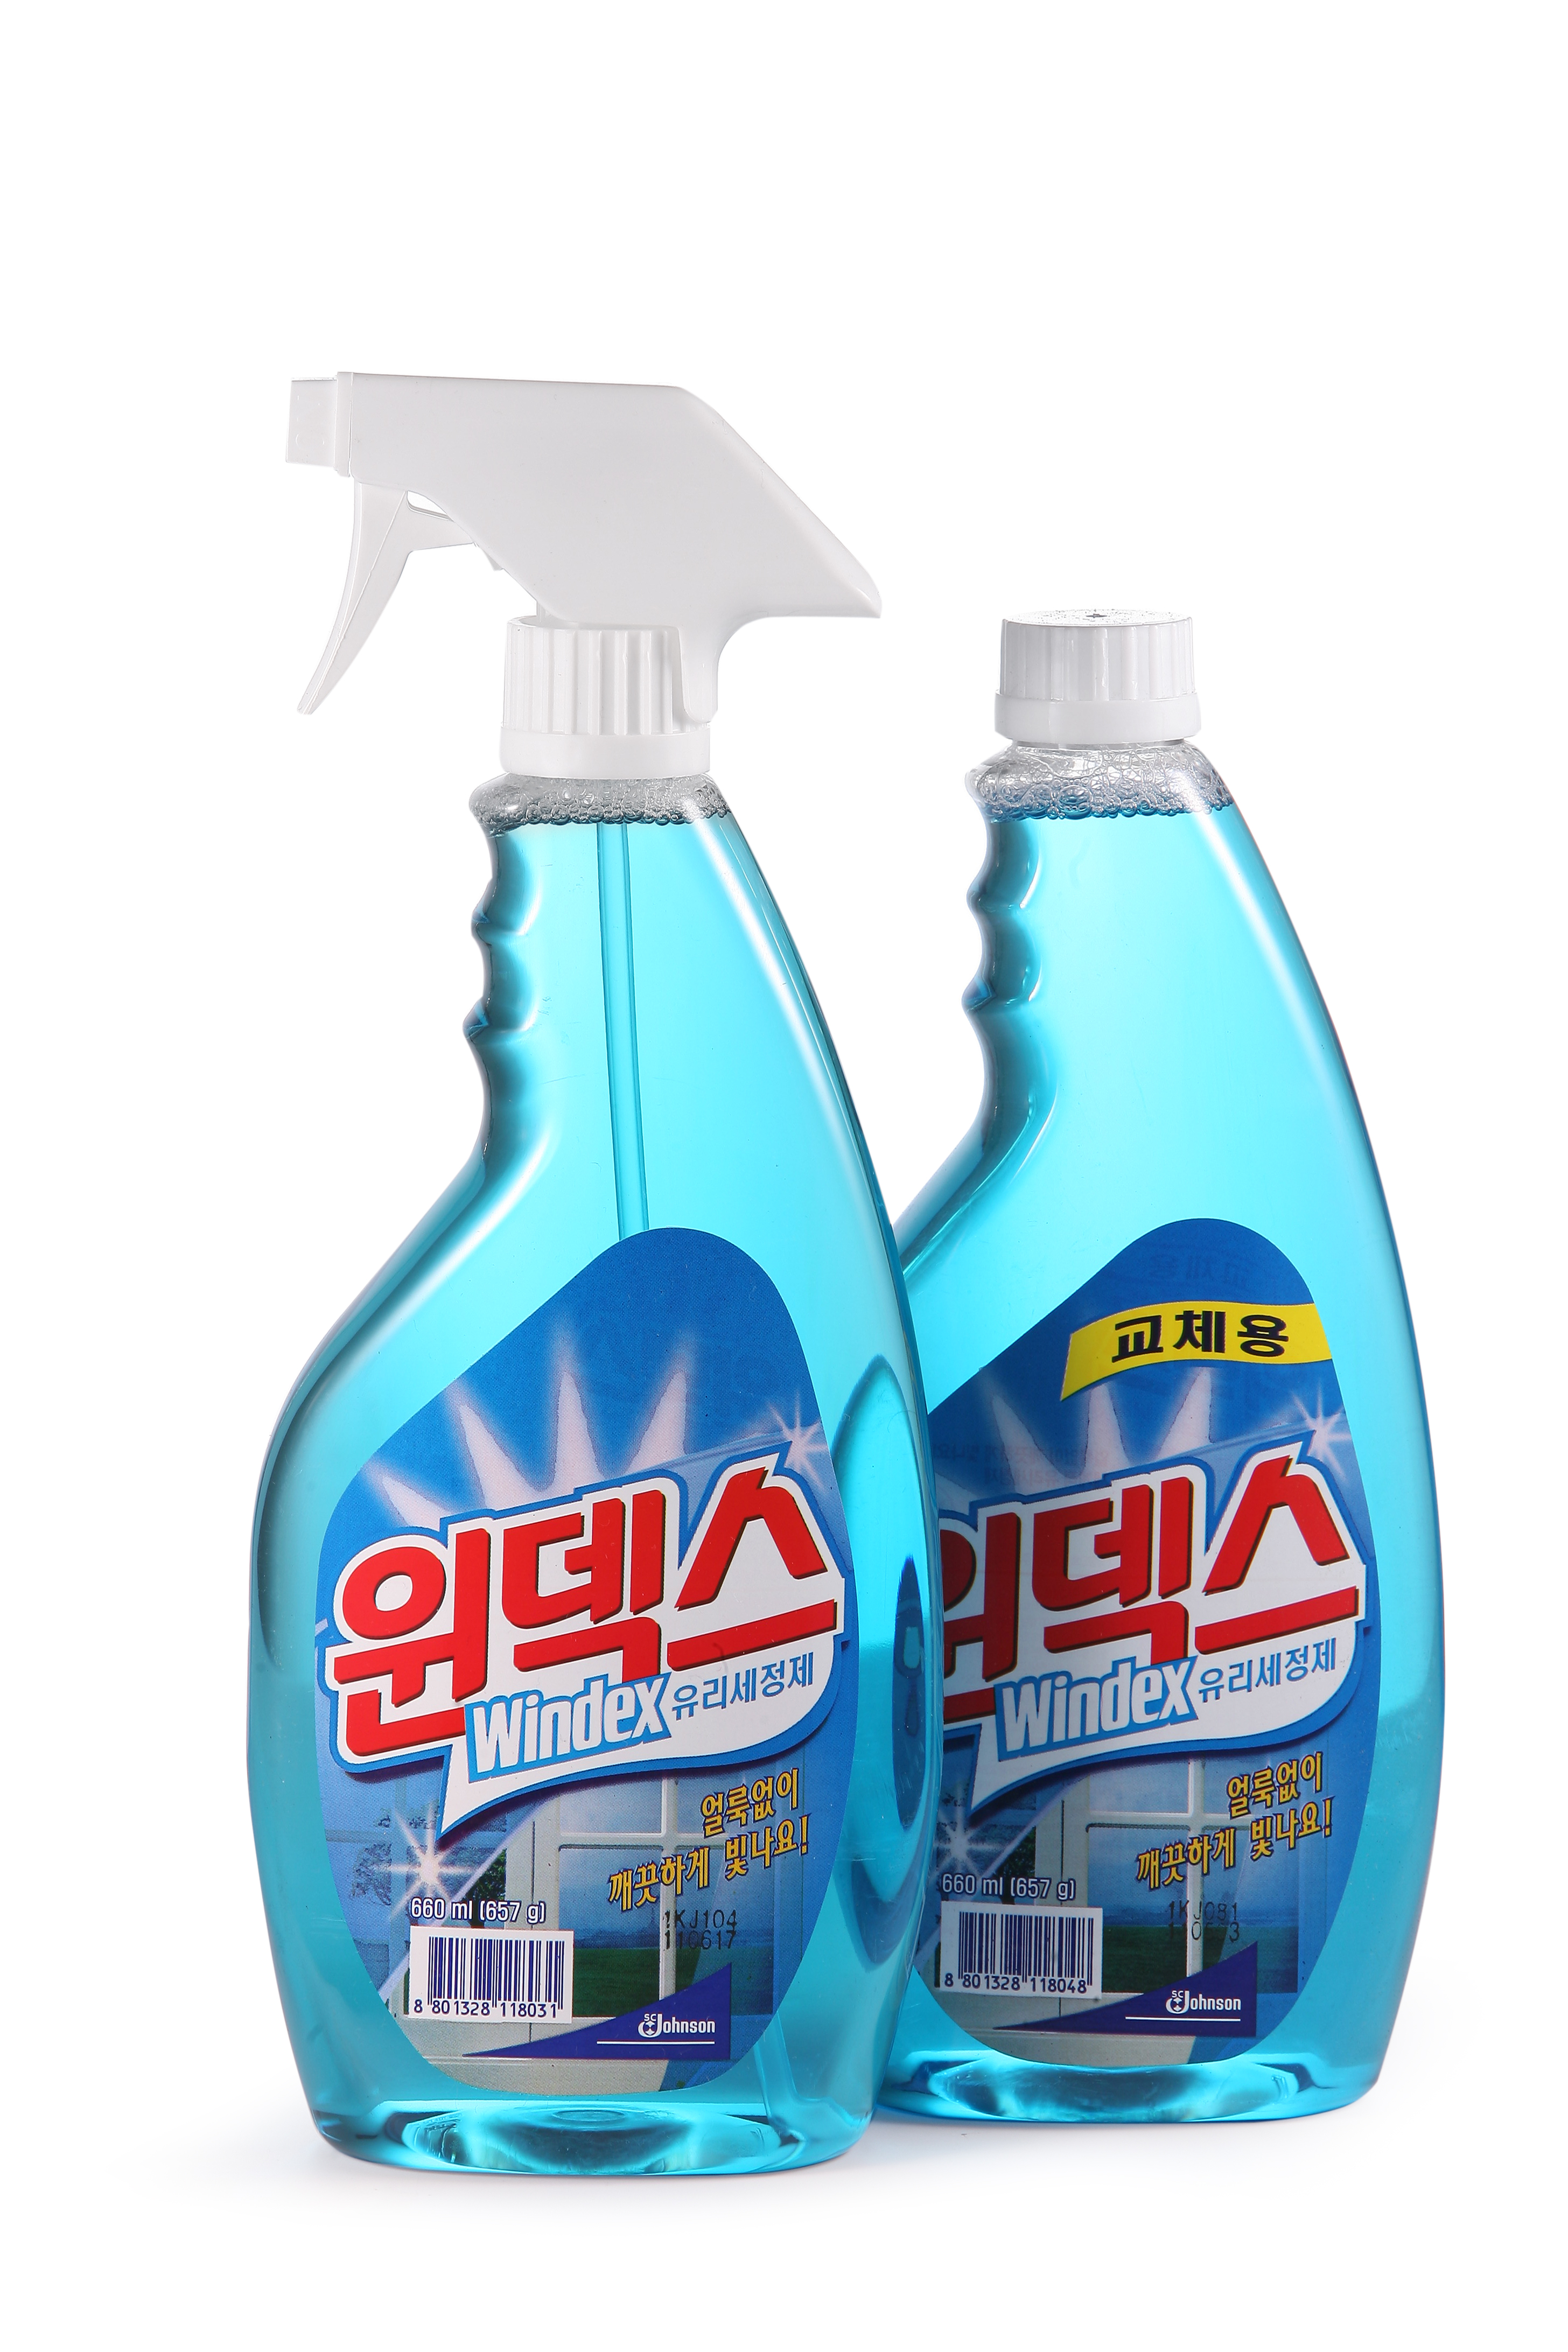 [SC Johnson] Windex _ Glass Cleaner (KOREA Ver.)  Made in Korea